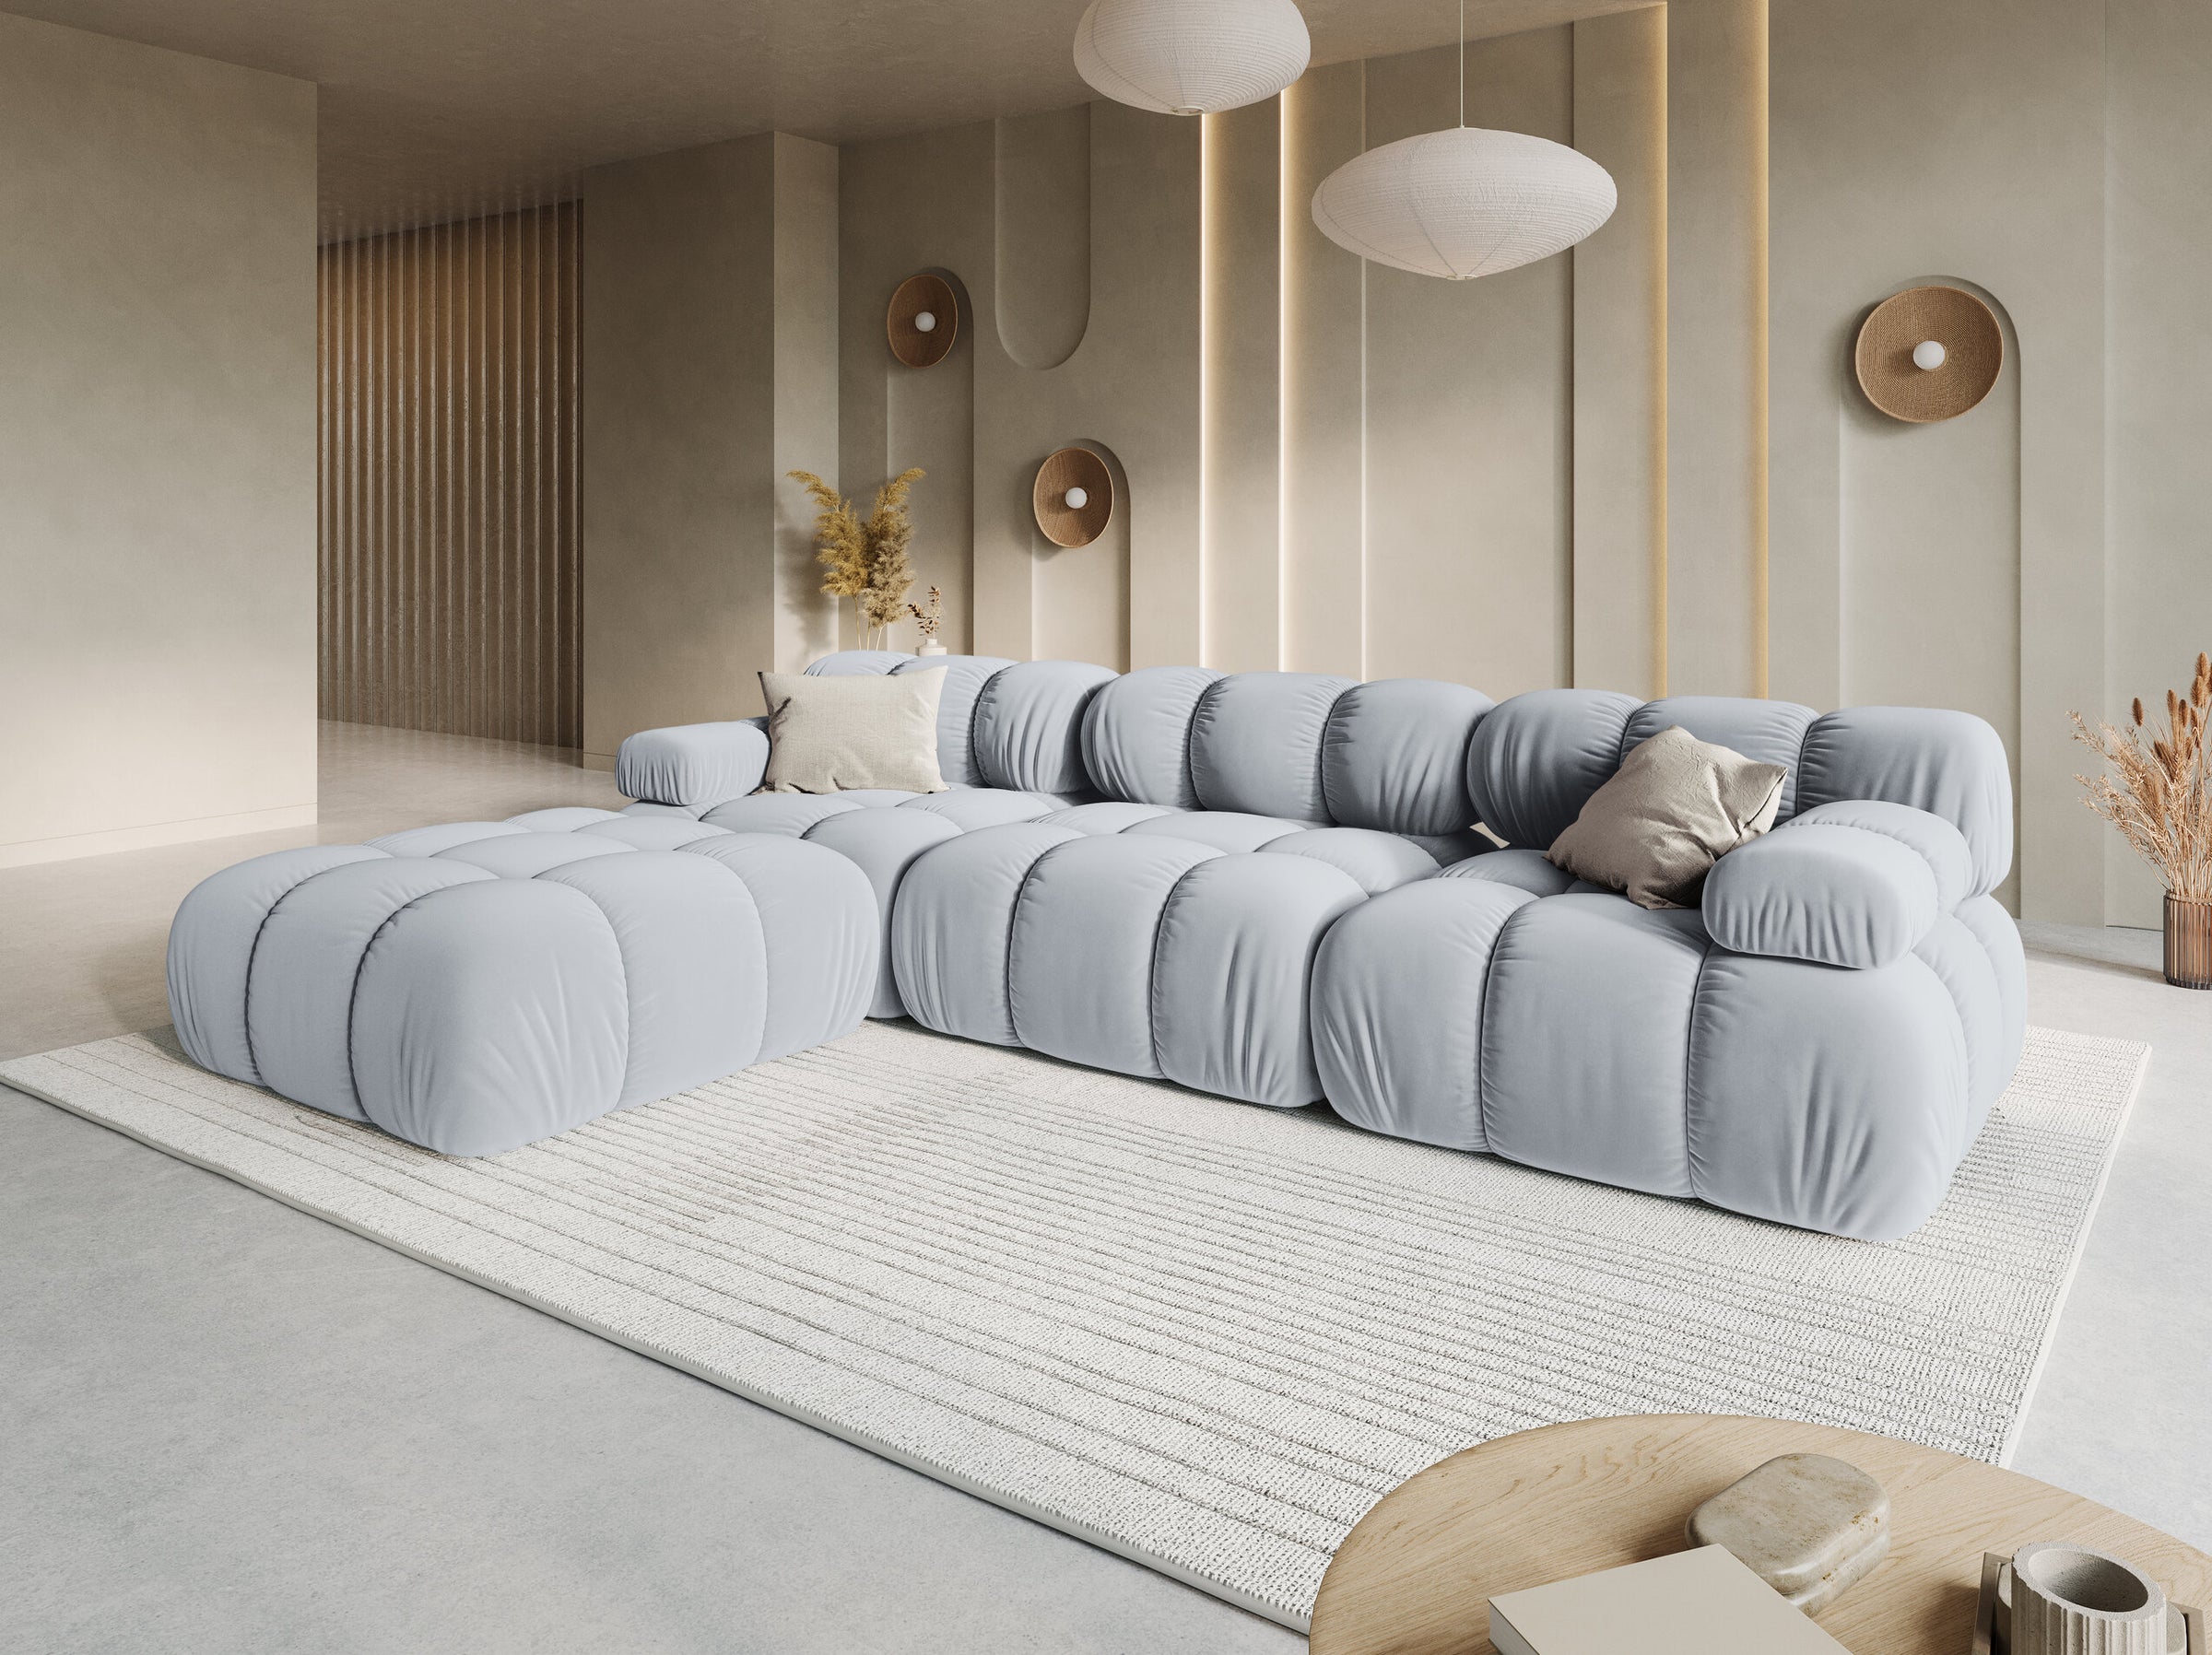 Bellis sofás terciopelo azul claro